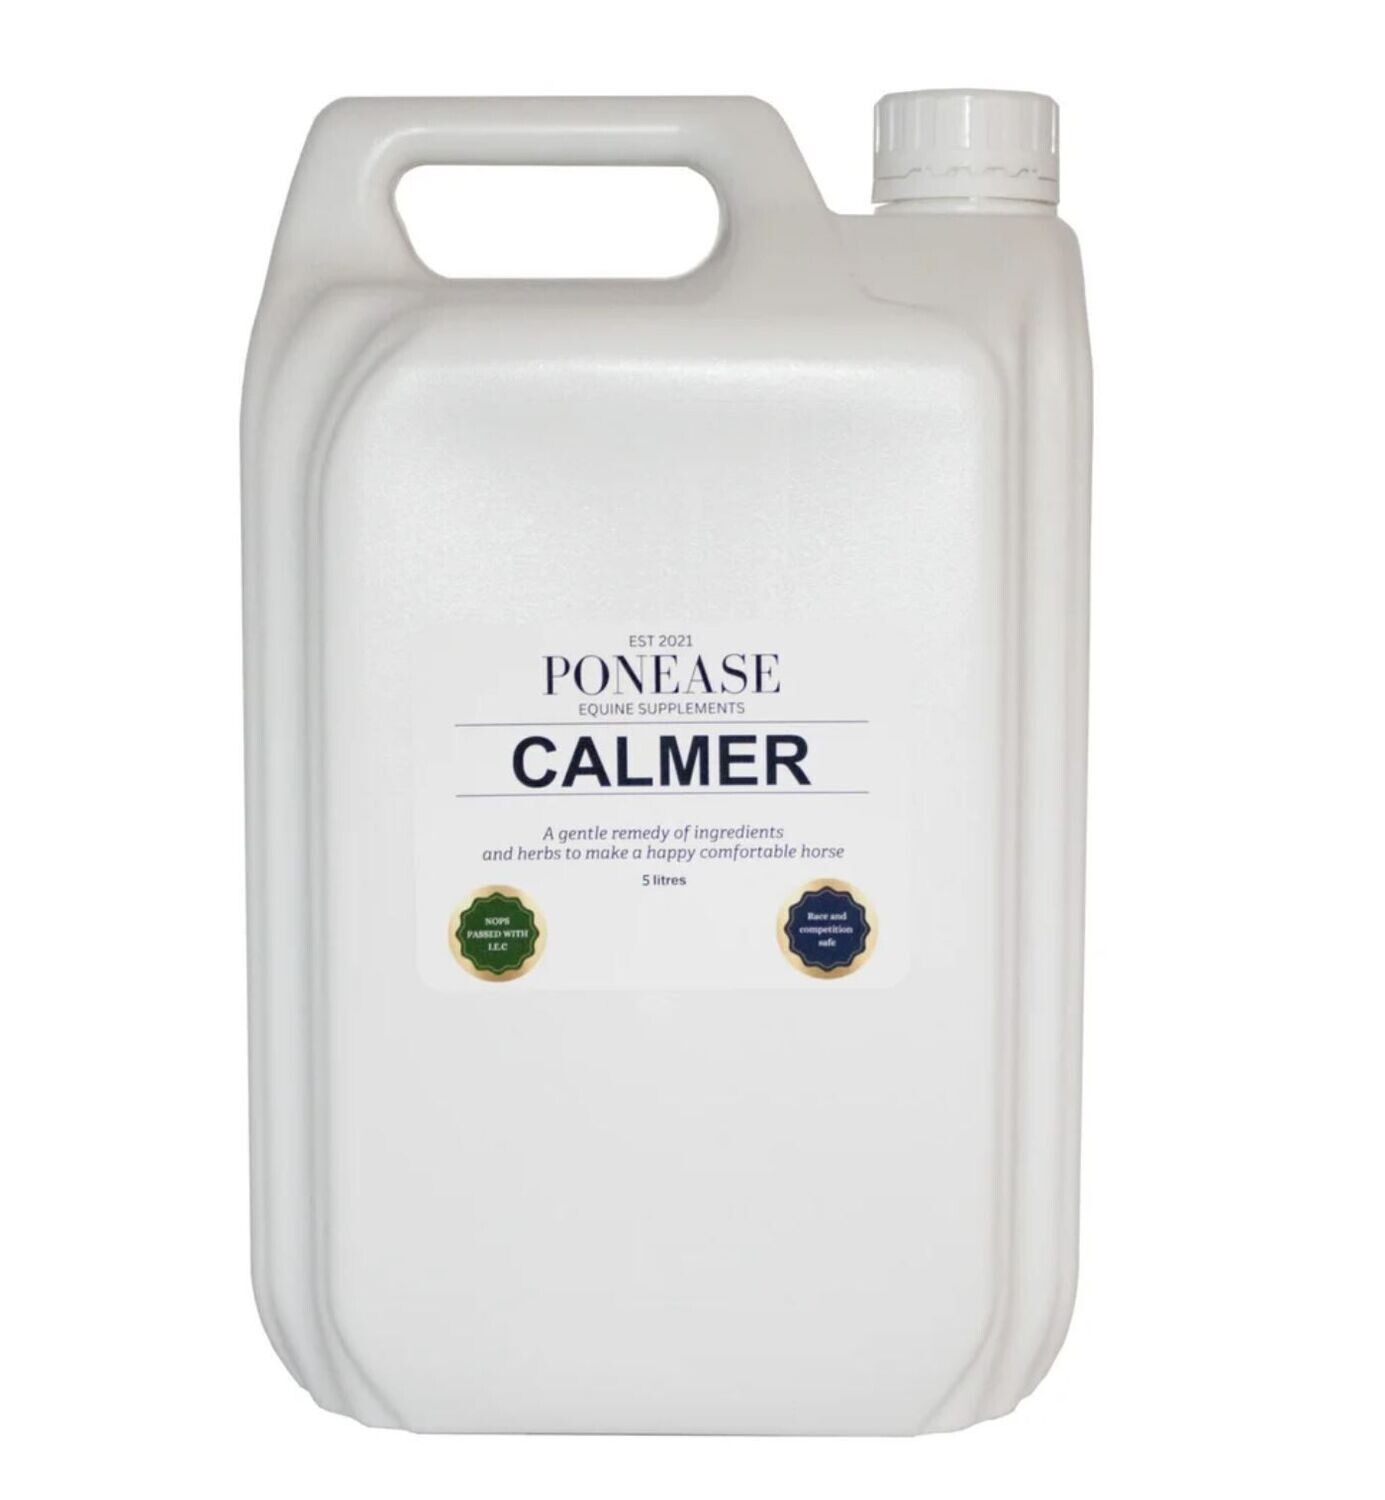 Ponease Calmer 5 liter